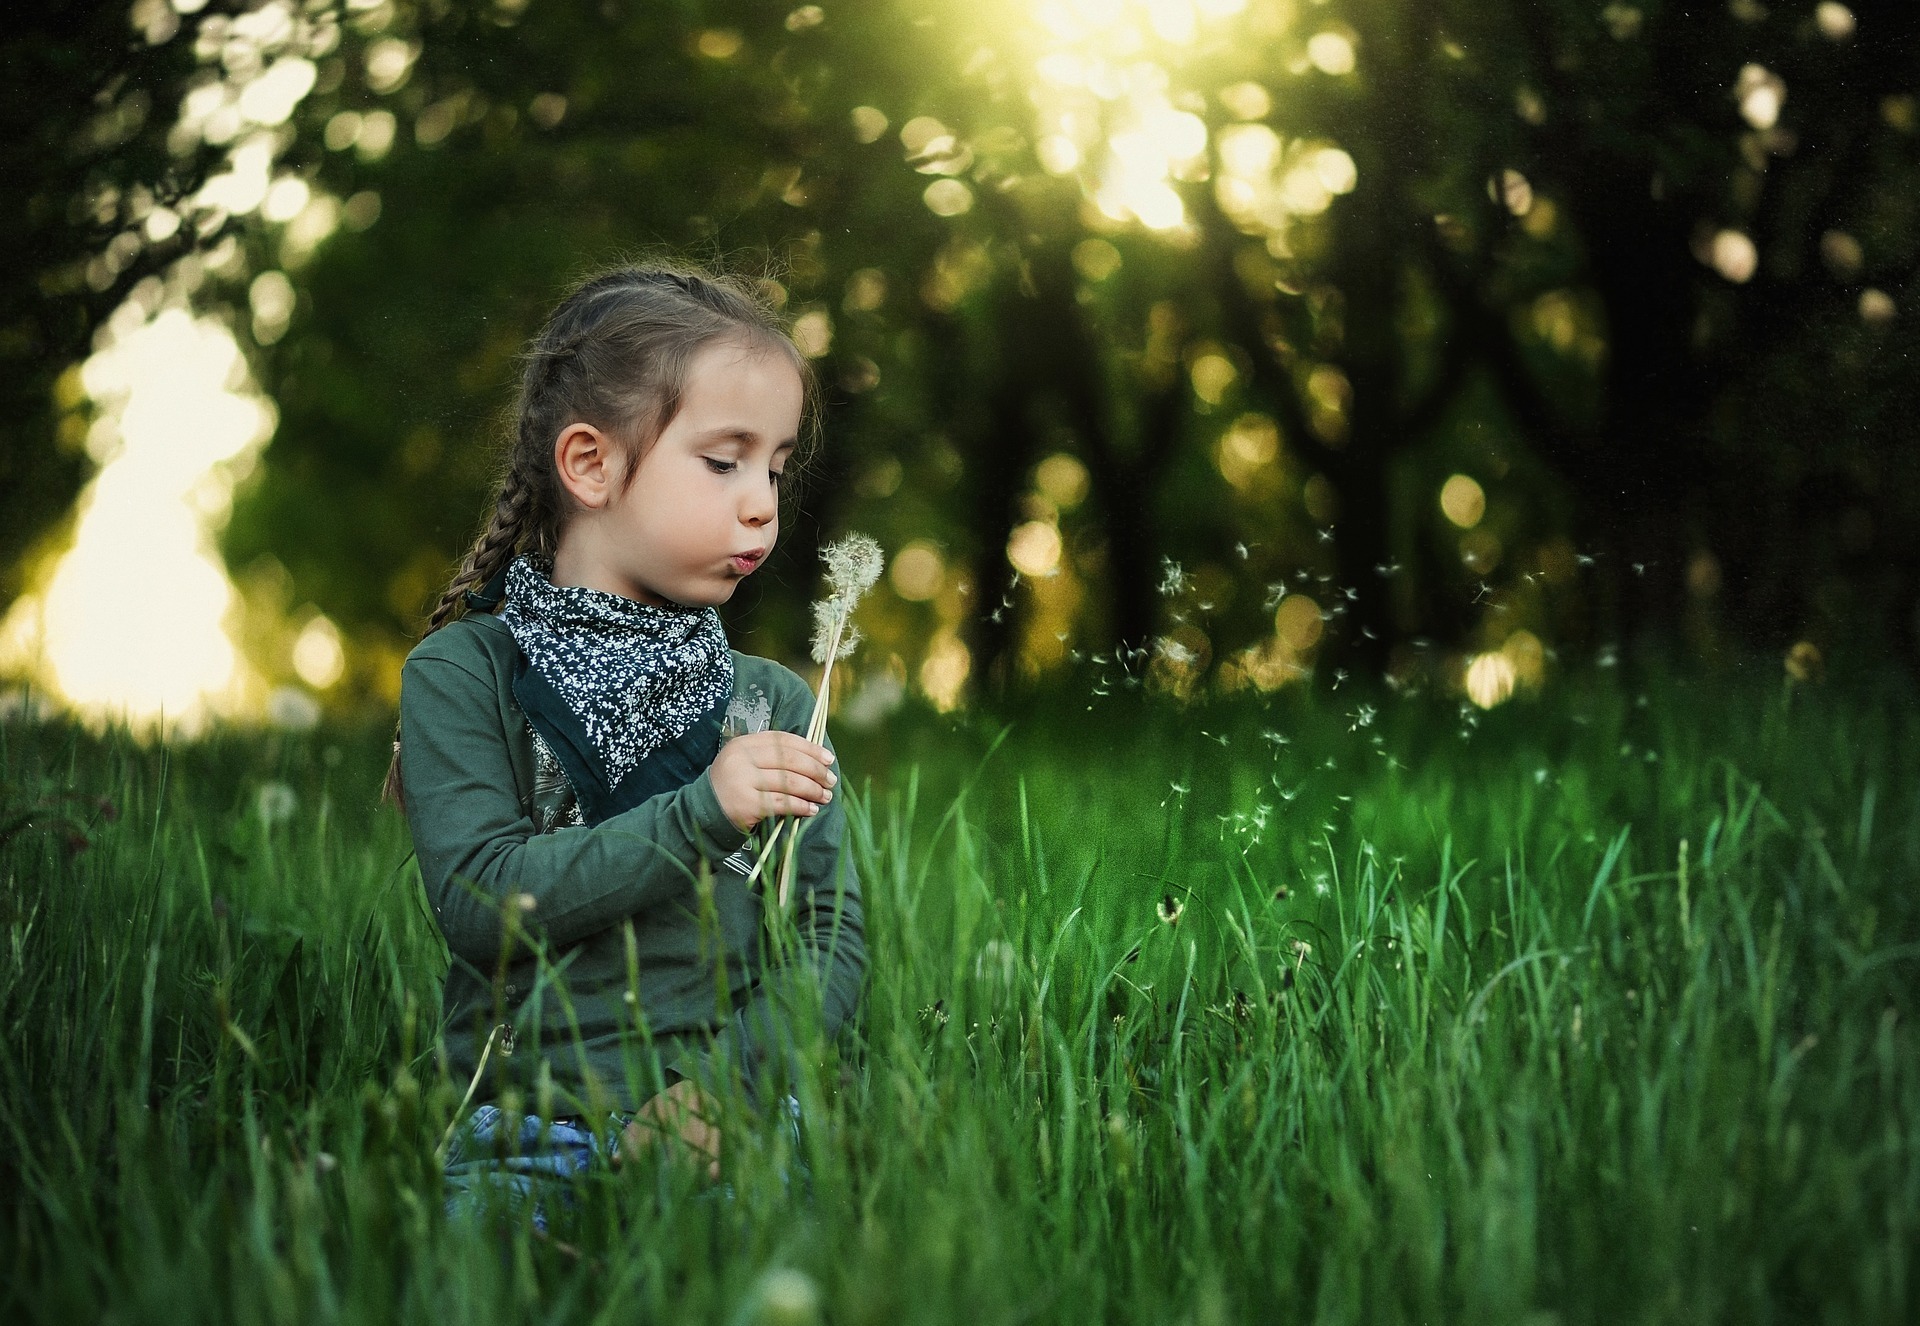 kislány a fűben - forrás: pixabay